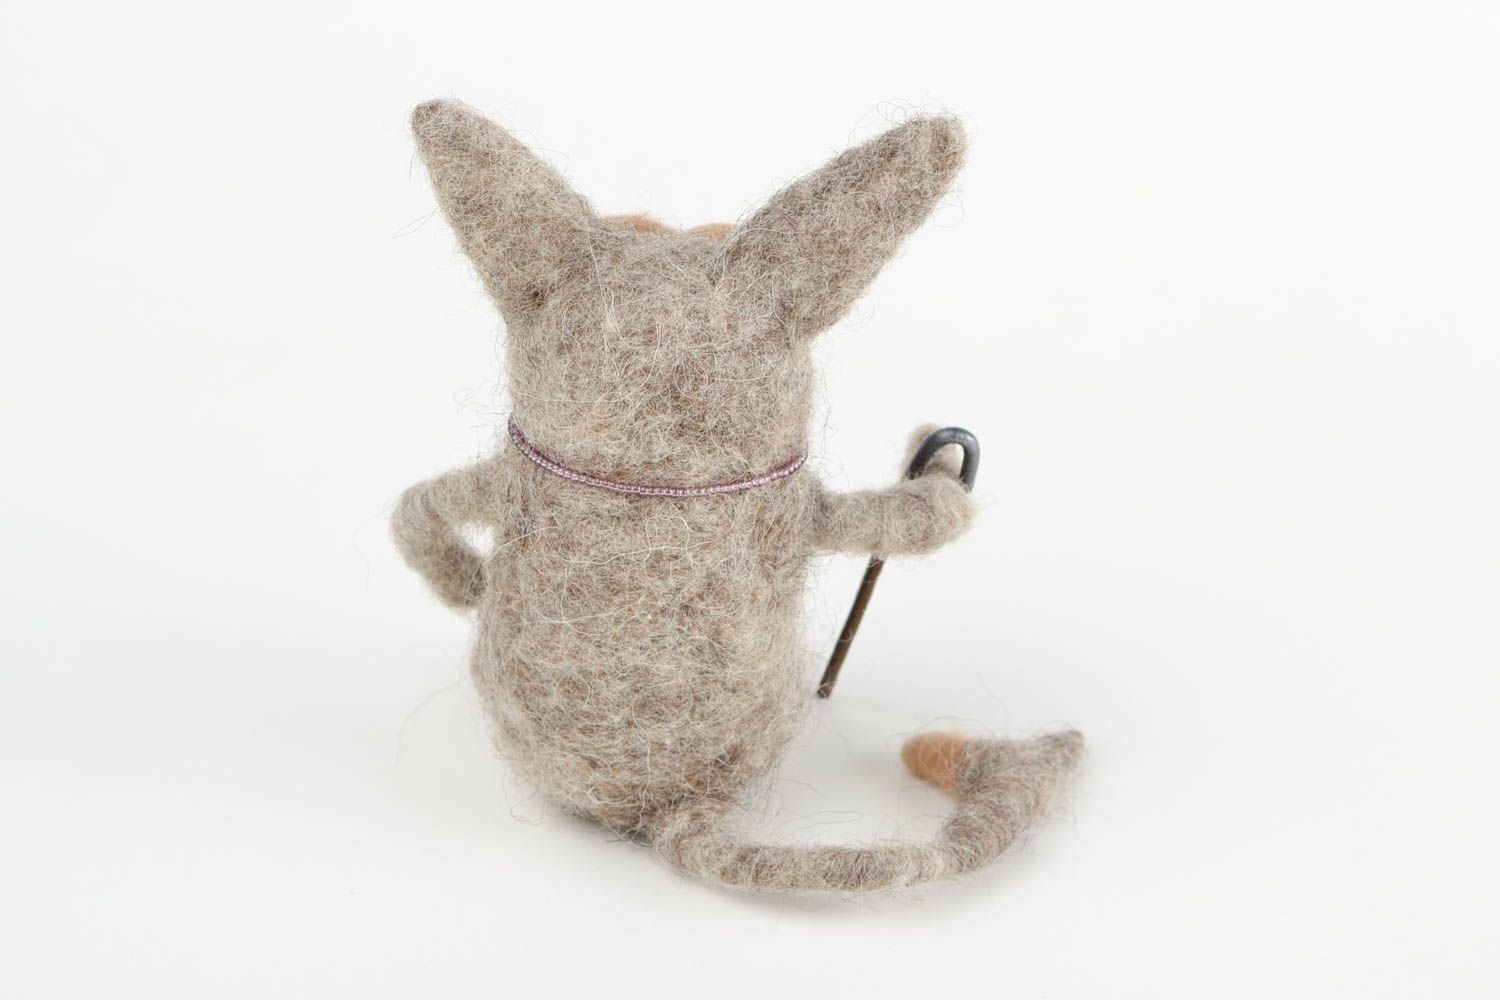 Мягкая игрушка кот мудрец ручной работы игрушка из шерсти валяная игрушка фото 5